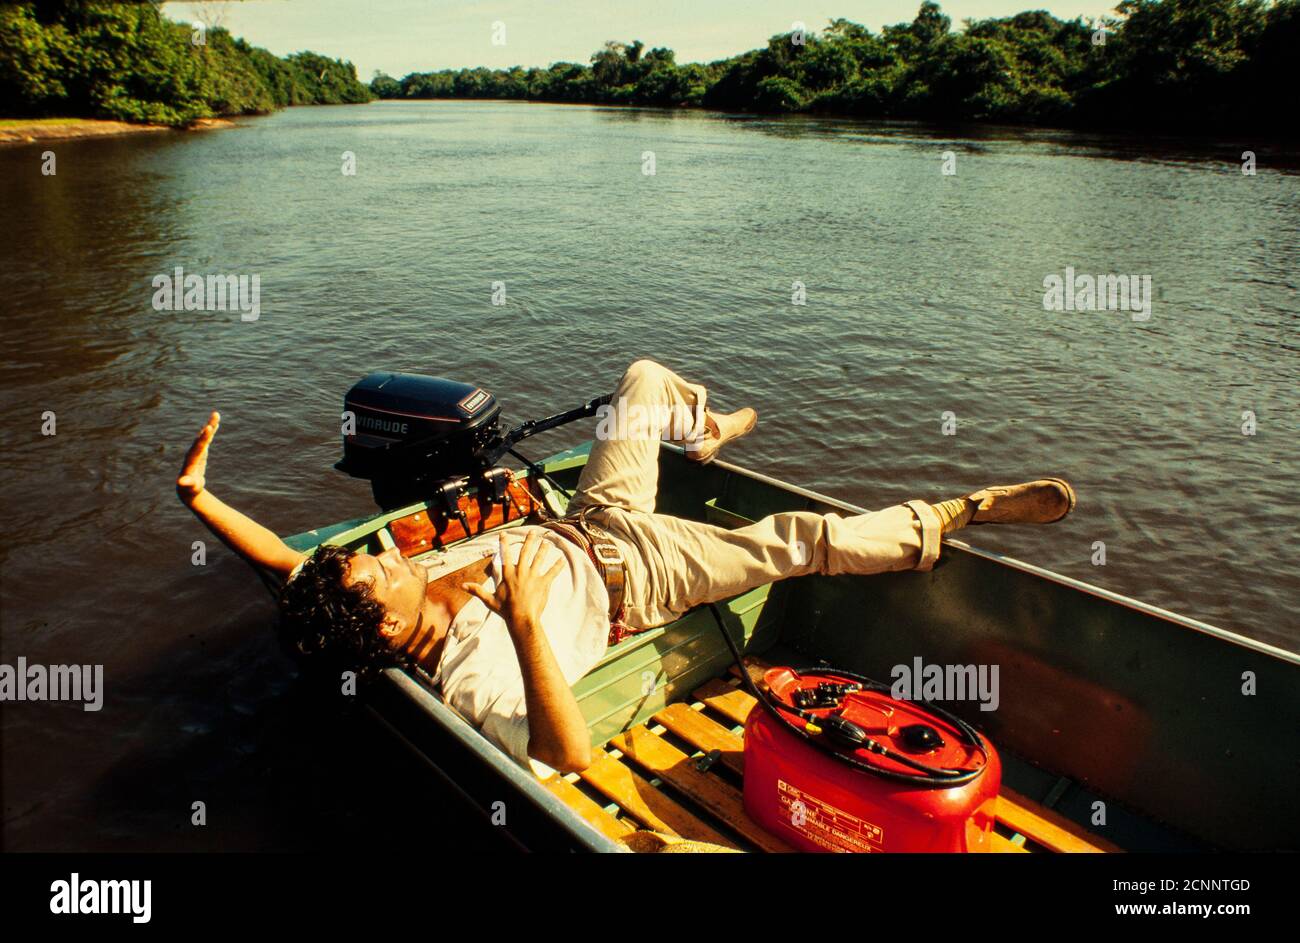 Pantanal, brasilianische Telenovela – TV-Seriendrama , Seifenoper - ursprünglich ausgestrahlt in 1990 auf Rede Manchete – brasilianische Fernsehsender extintic in 1999 - geschrieben von Benedito Ruy Barbosa und Regie von Jayme Monjardim - Schauspieler Angelo Antonio entspannen während einer Pause auf den Aufnahmen. Die Pantanal-Region, deren Name vom portugiesischen Wort pântano - was Sumpf bedeutet - ableitet, ist eines der größten Süßwasser-Feuchtgebiete-Ökosysteme der Welt. Die Region wurde als ein ökologisches Paradies bezeichnet Stockfoto